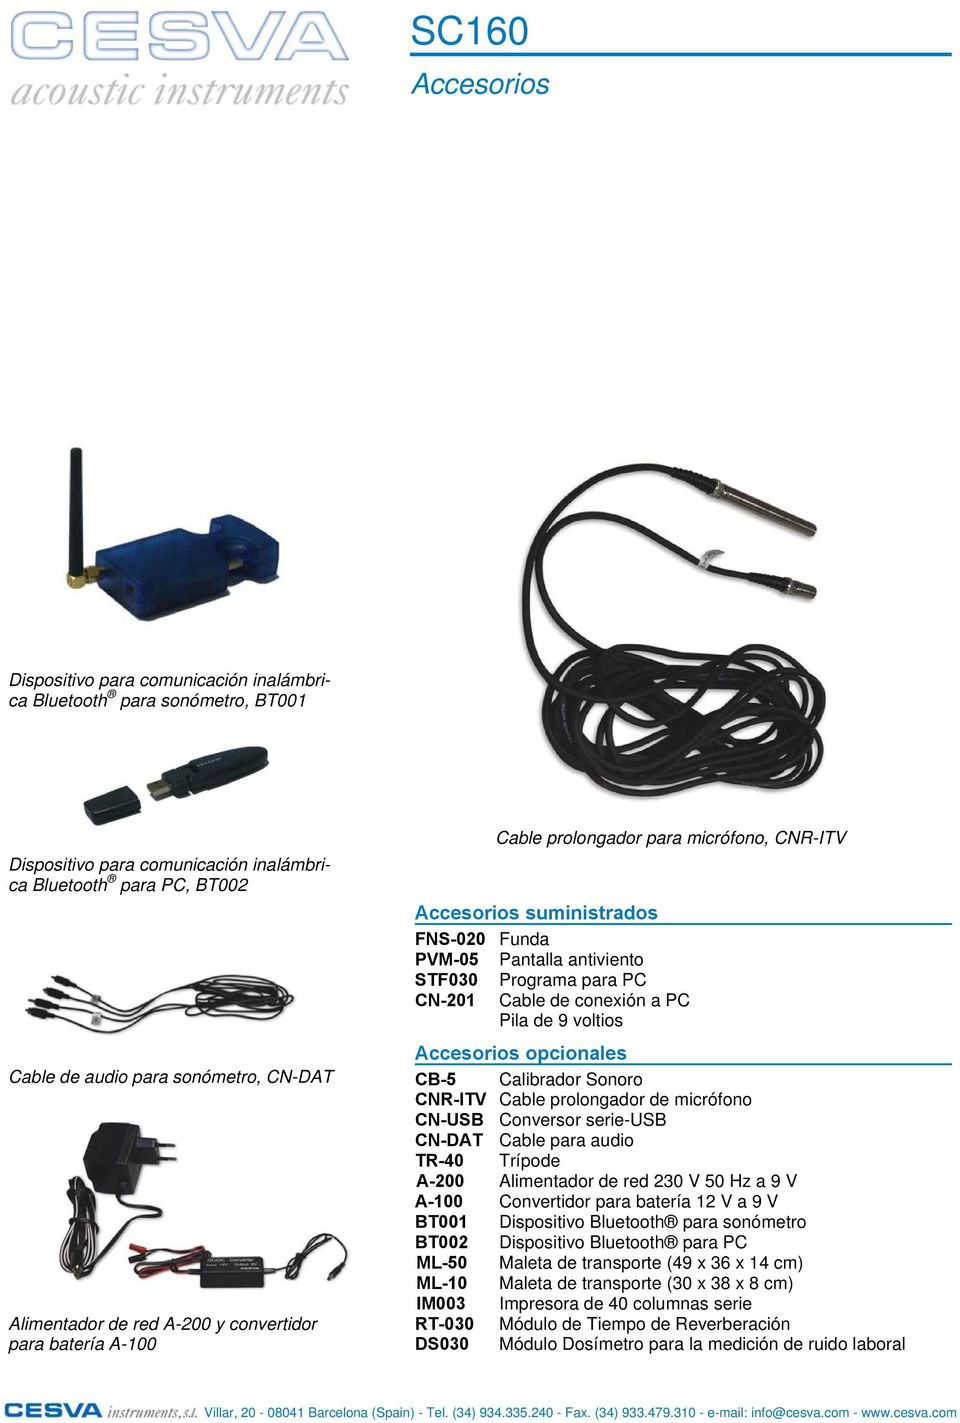 Cable de conexión a PC Pila de 9 voltios Accesorios opcionales CB-5 Calibrador Sonoro CNR-ITV Cable prolongador de micrófono CN-USB Conversor serie-usb CN-DAT Cable para audio TR-40 Trípode A-200